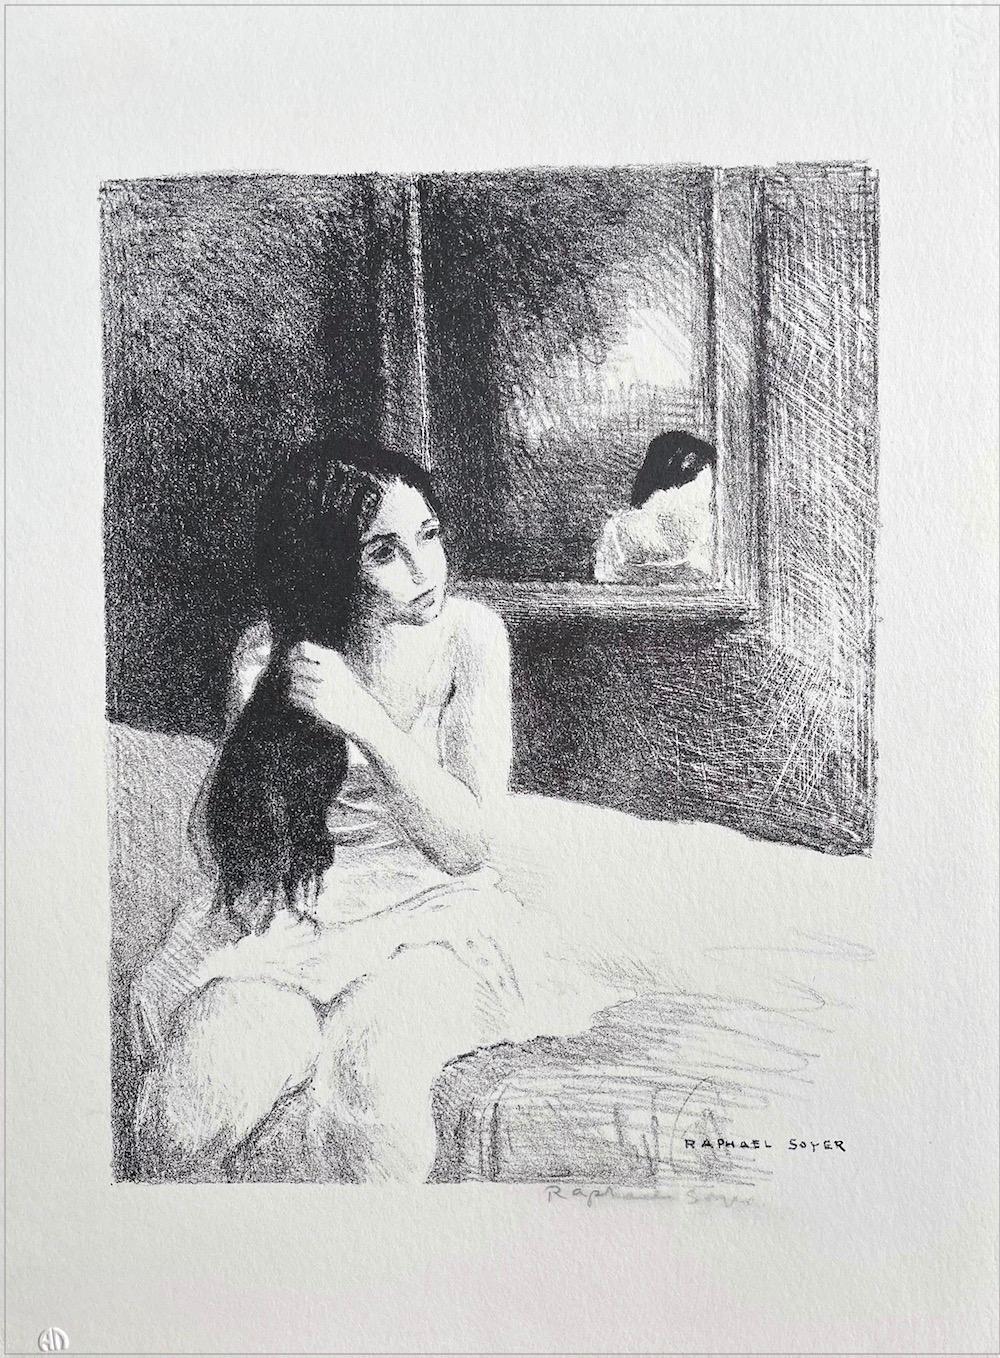 YOUNG WOMAN COMBING HER HAIR Handgezeichnete signierte Lithographie, Innenporträt – Print von Raphael Soyer